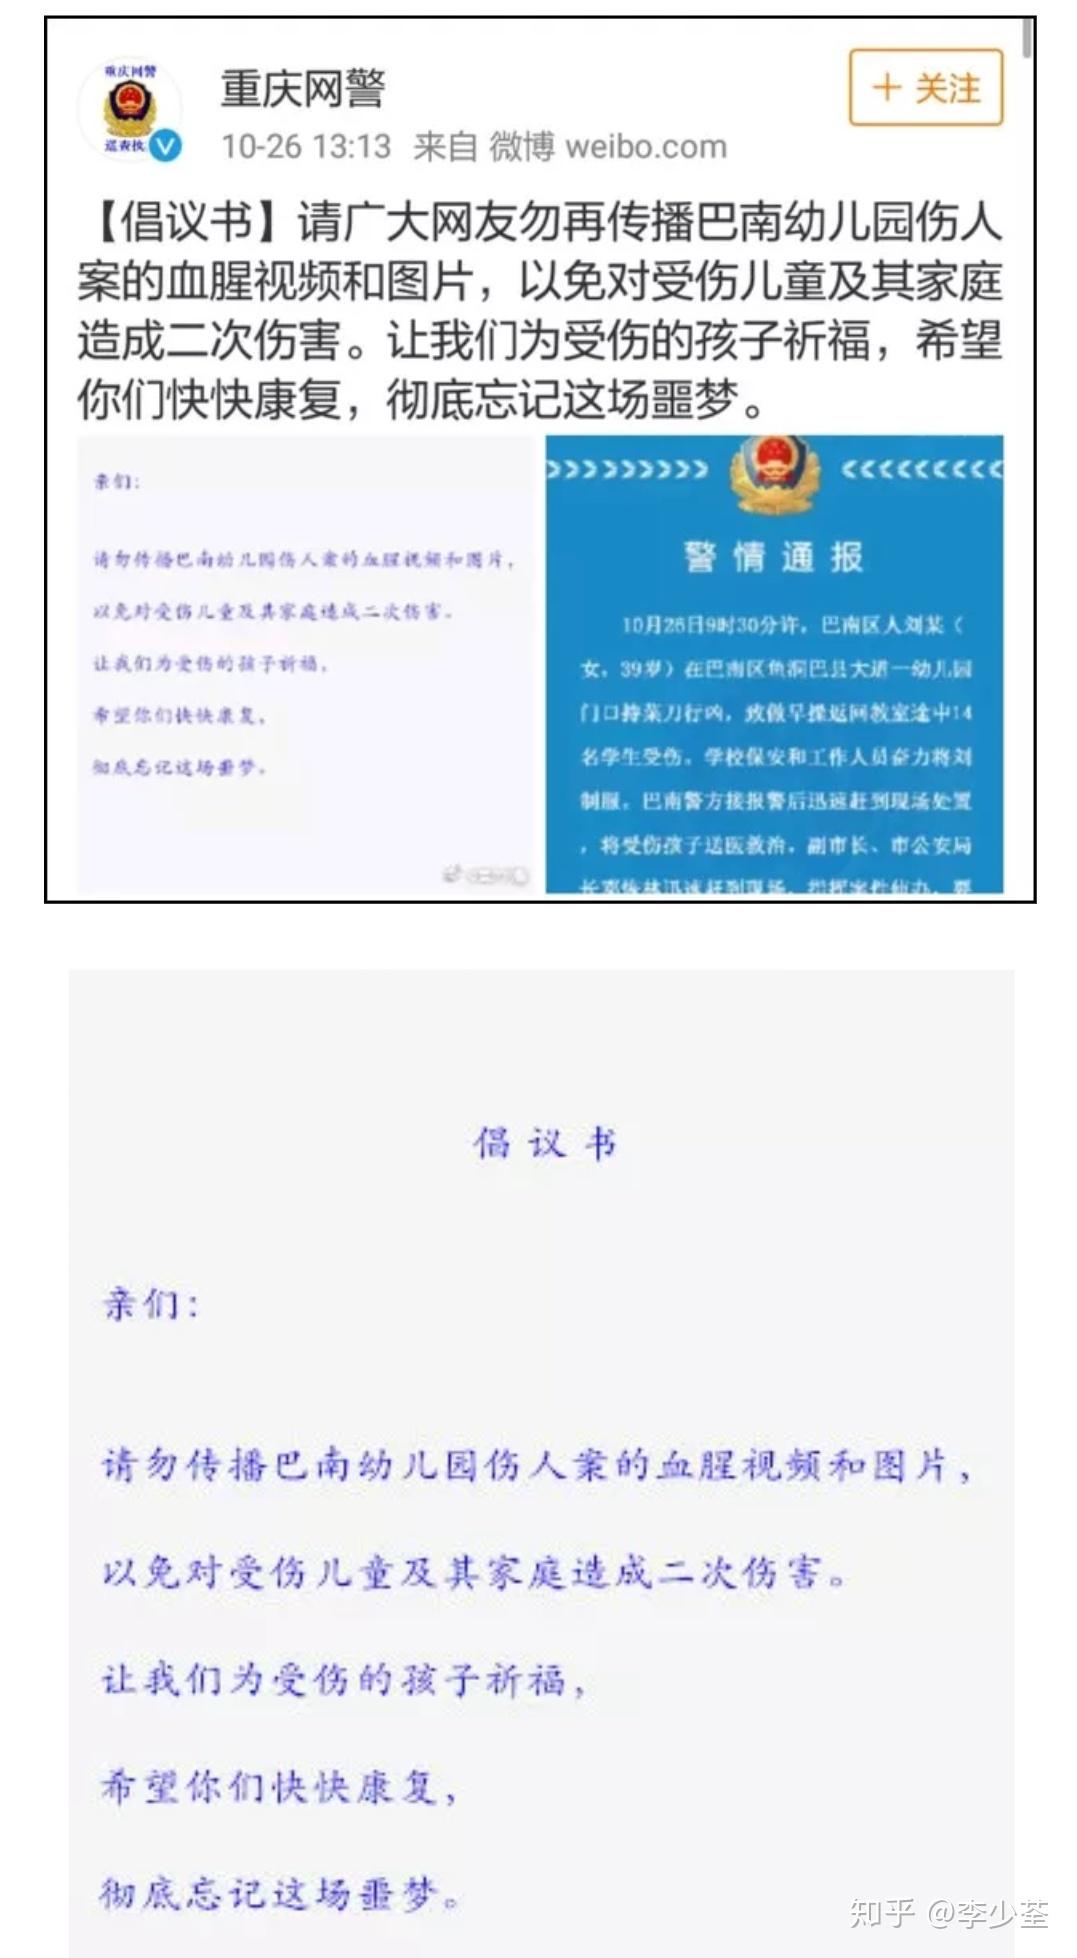 重庆新村幼教集团